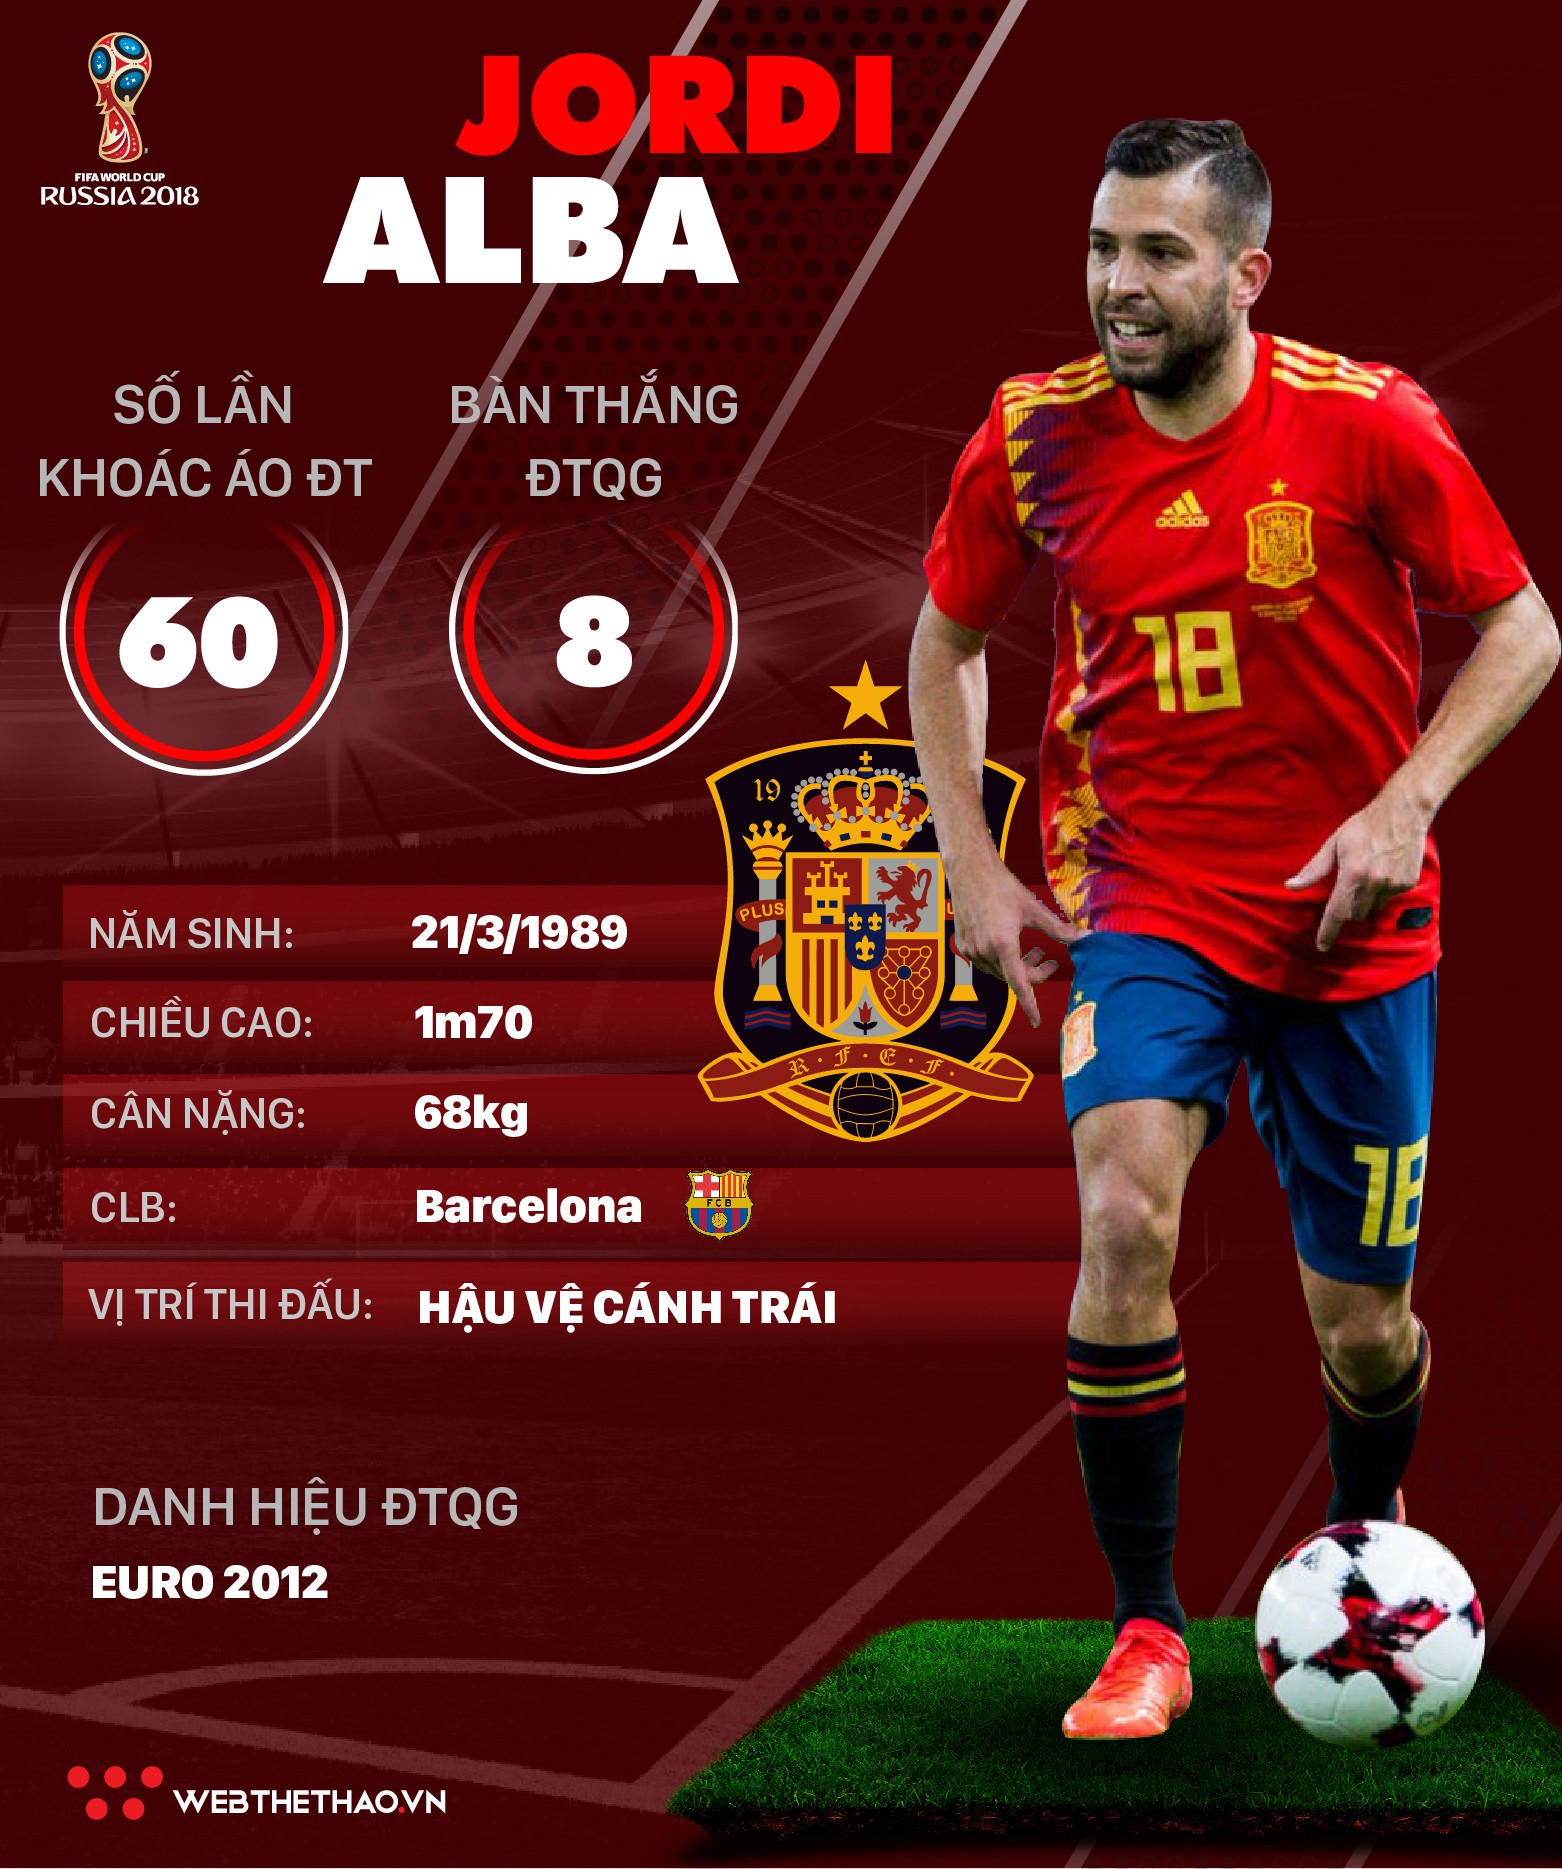 Thông tin cầu thủ Jordi Alba của ĐT Tây Ban Nha dự World Cup 2018 - Ảnh 1.